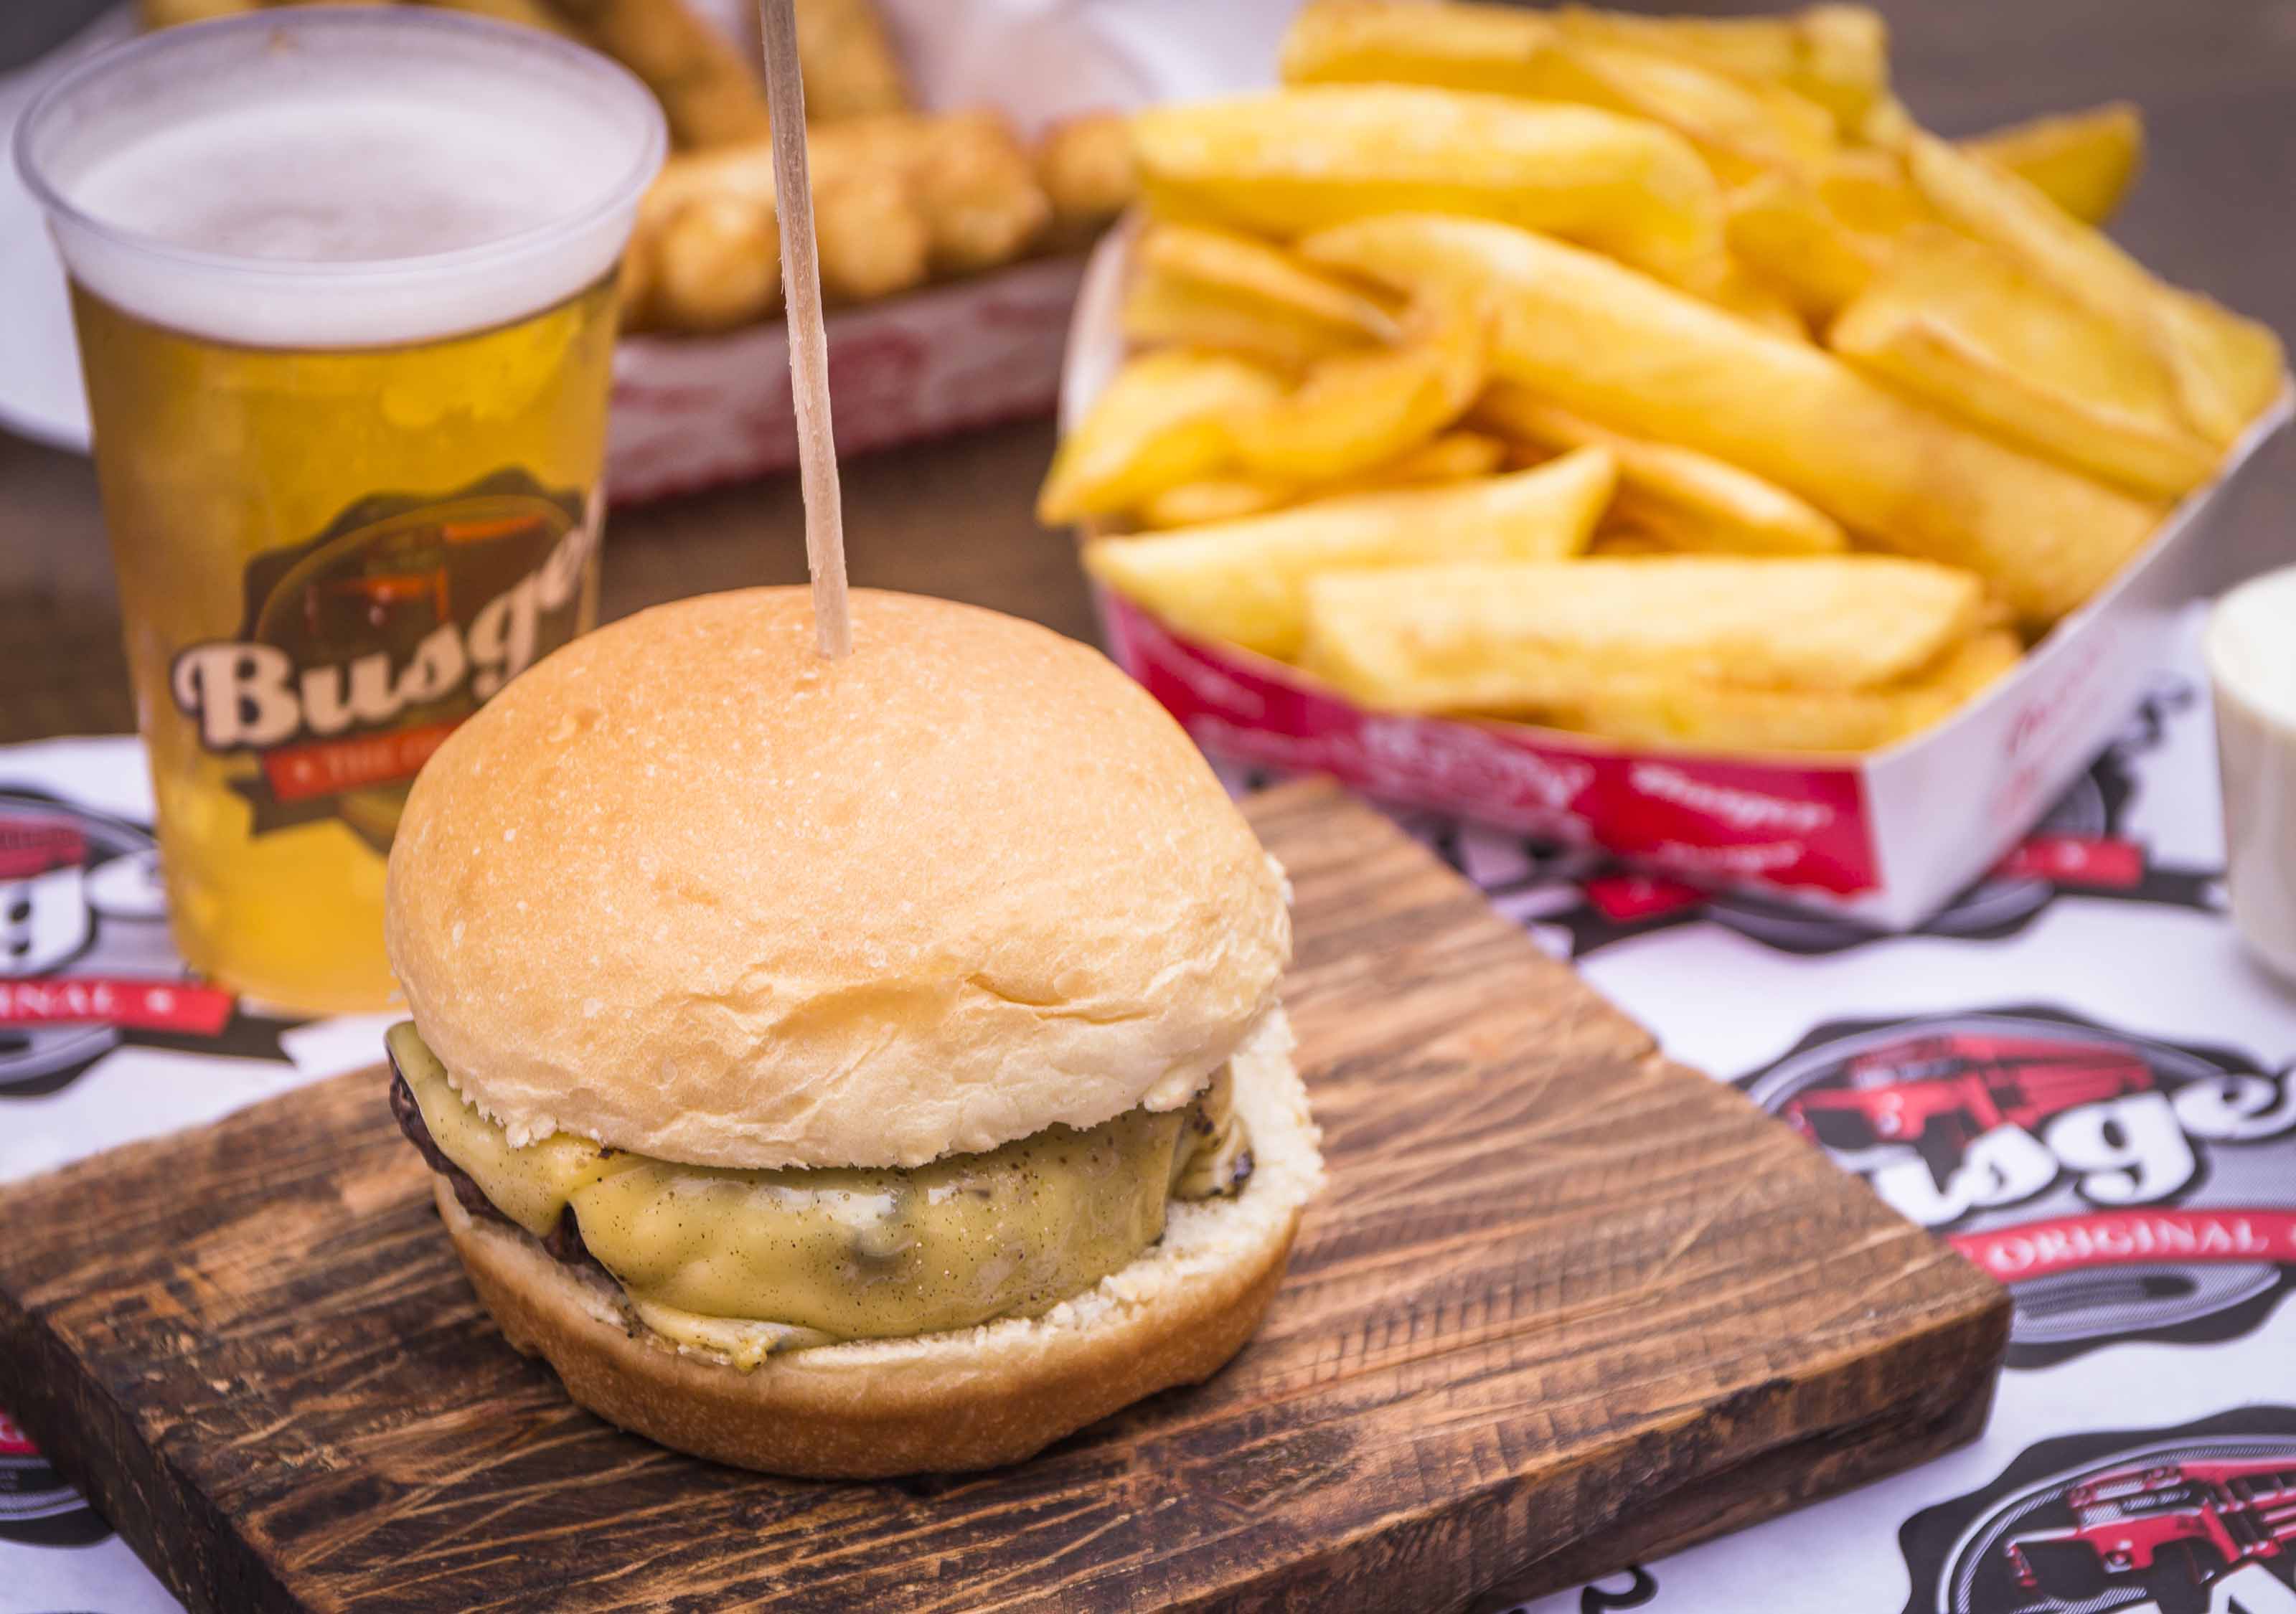 Roteiro: Locais para saborear um suculento cheeseburger